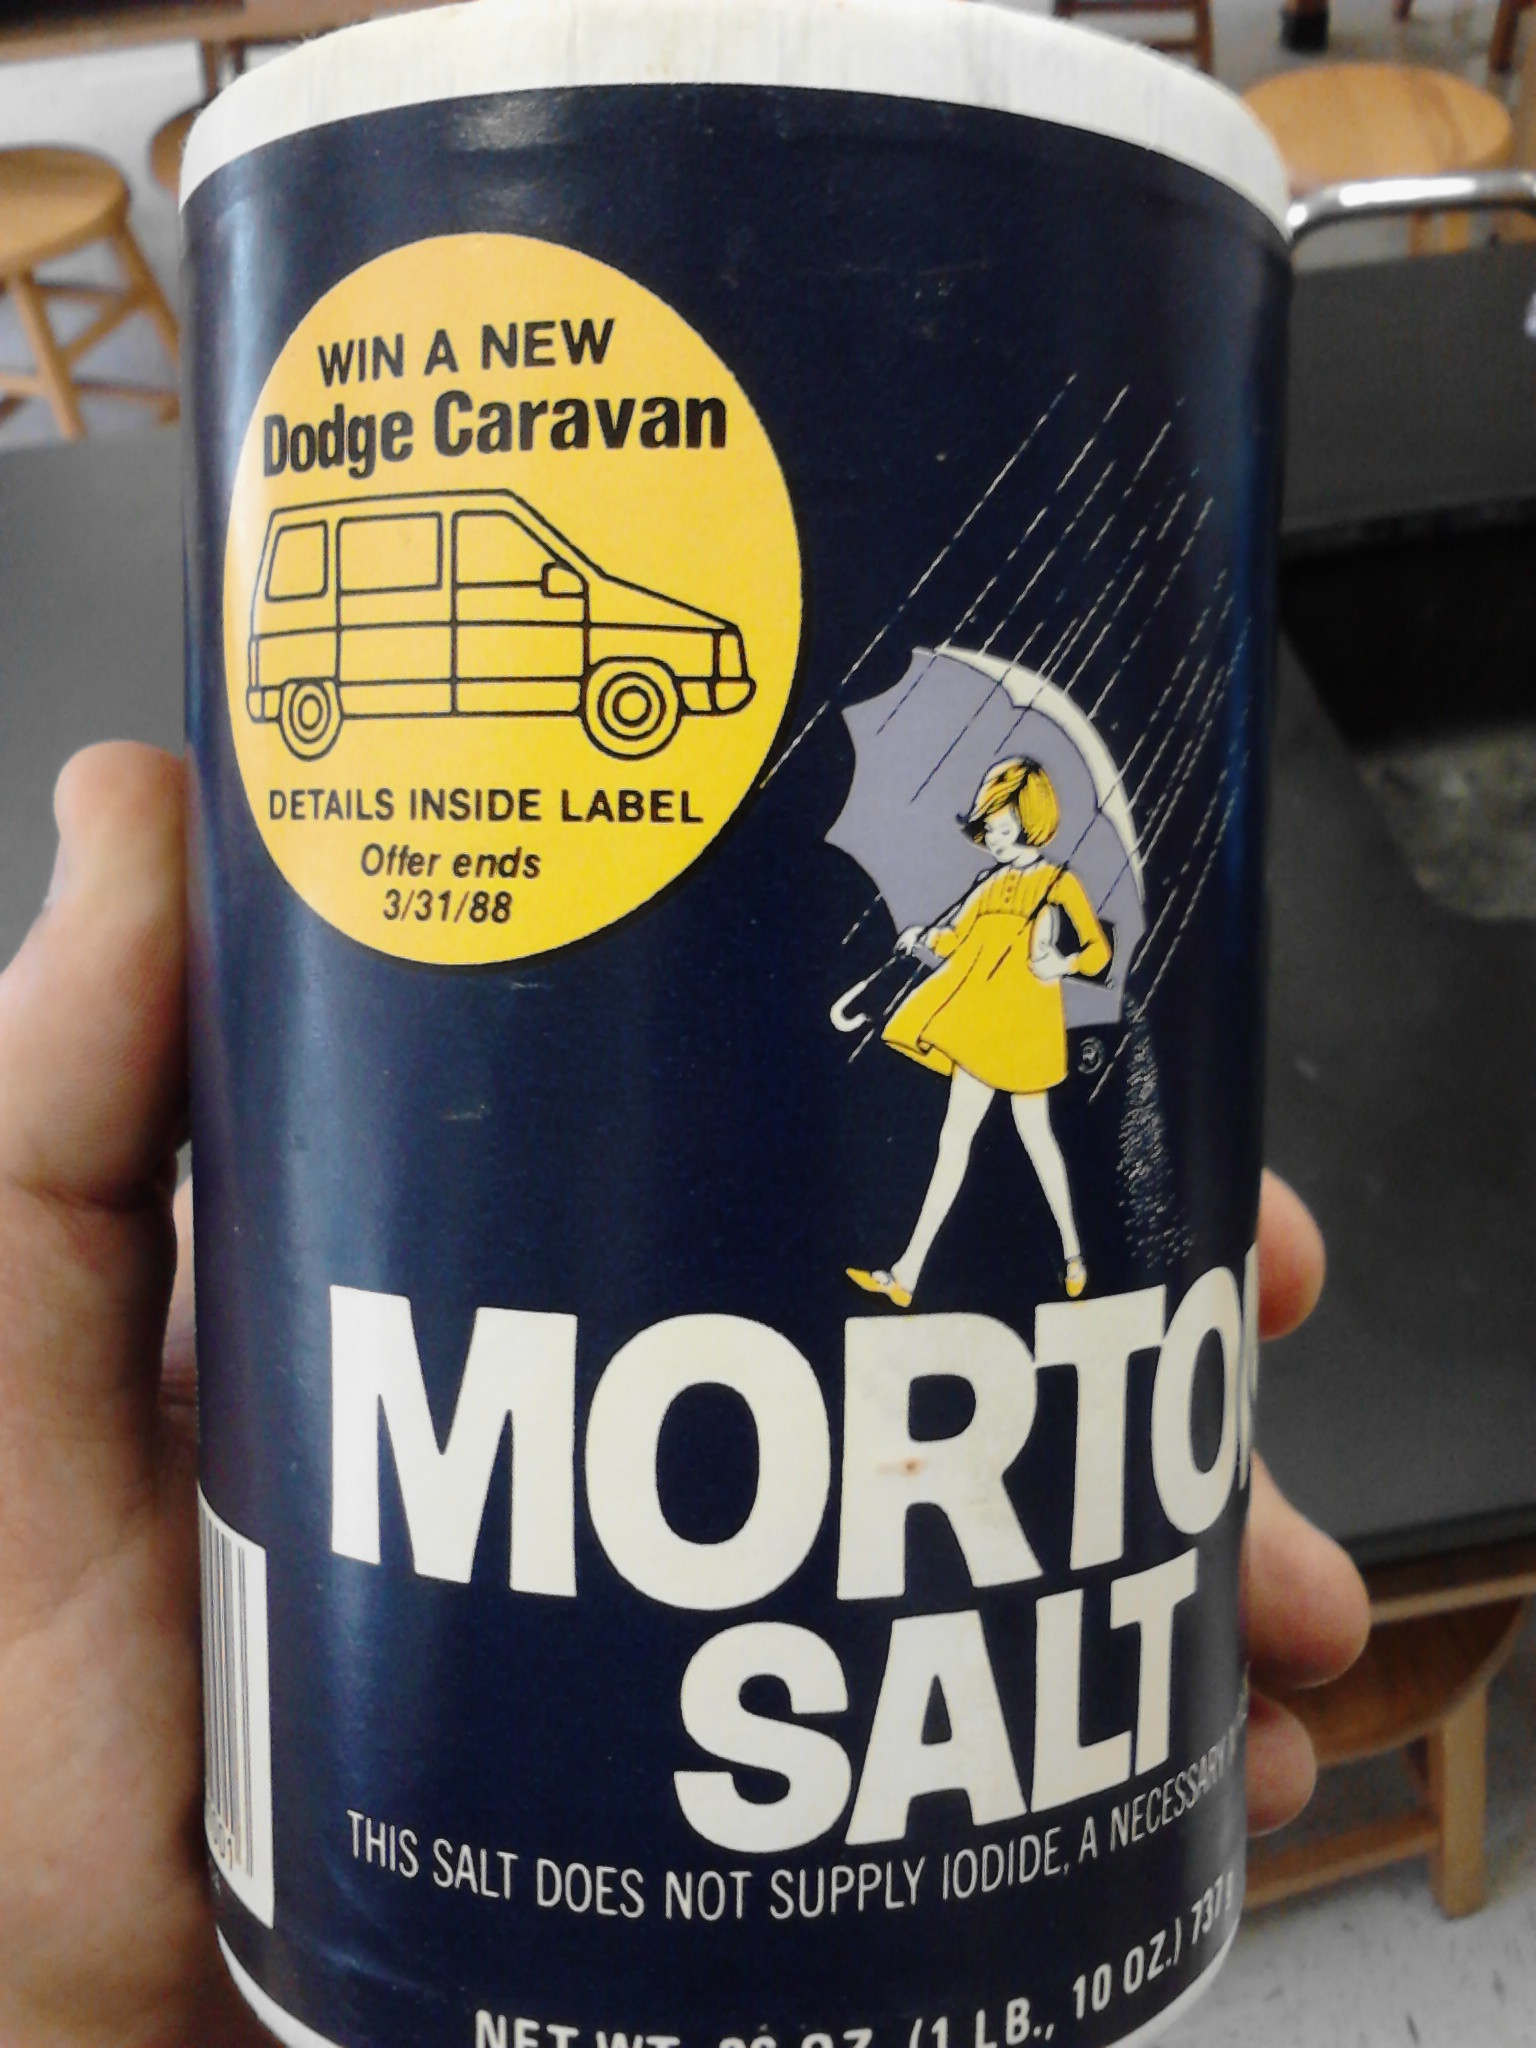 Morton's Salt